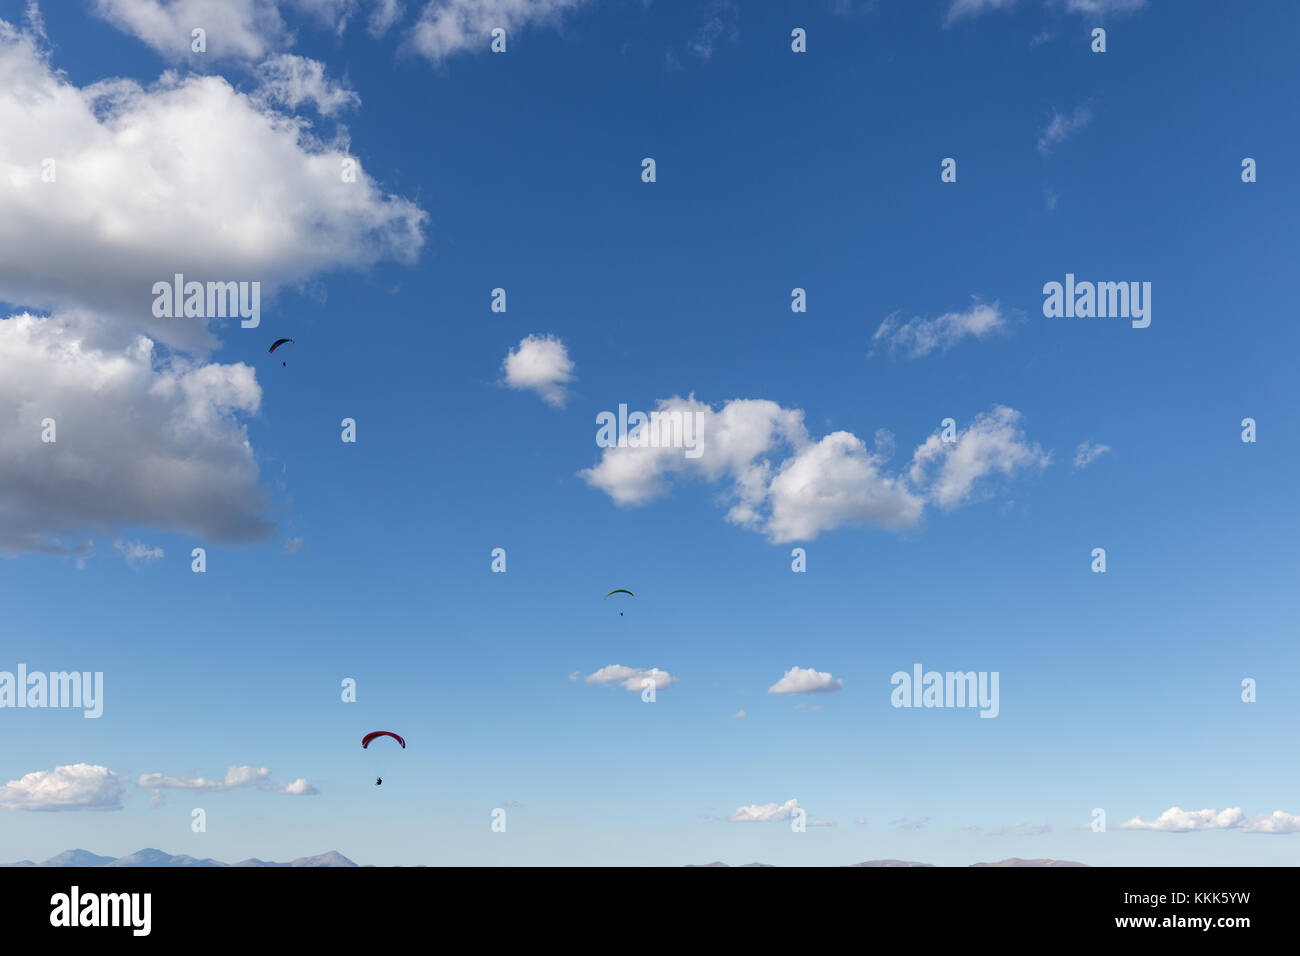 Drei para Segelflugzeuge gegen einen tiefen, blauen Himmel fliegen, mit großen weißen Wolken Stockfoto